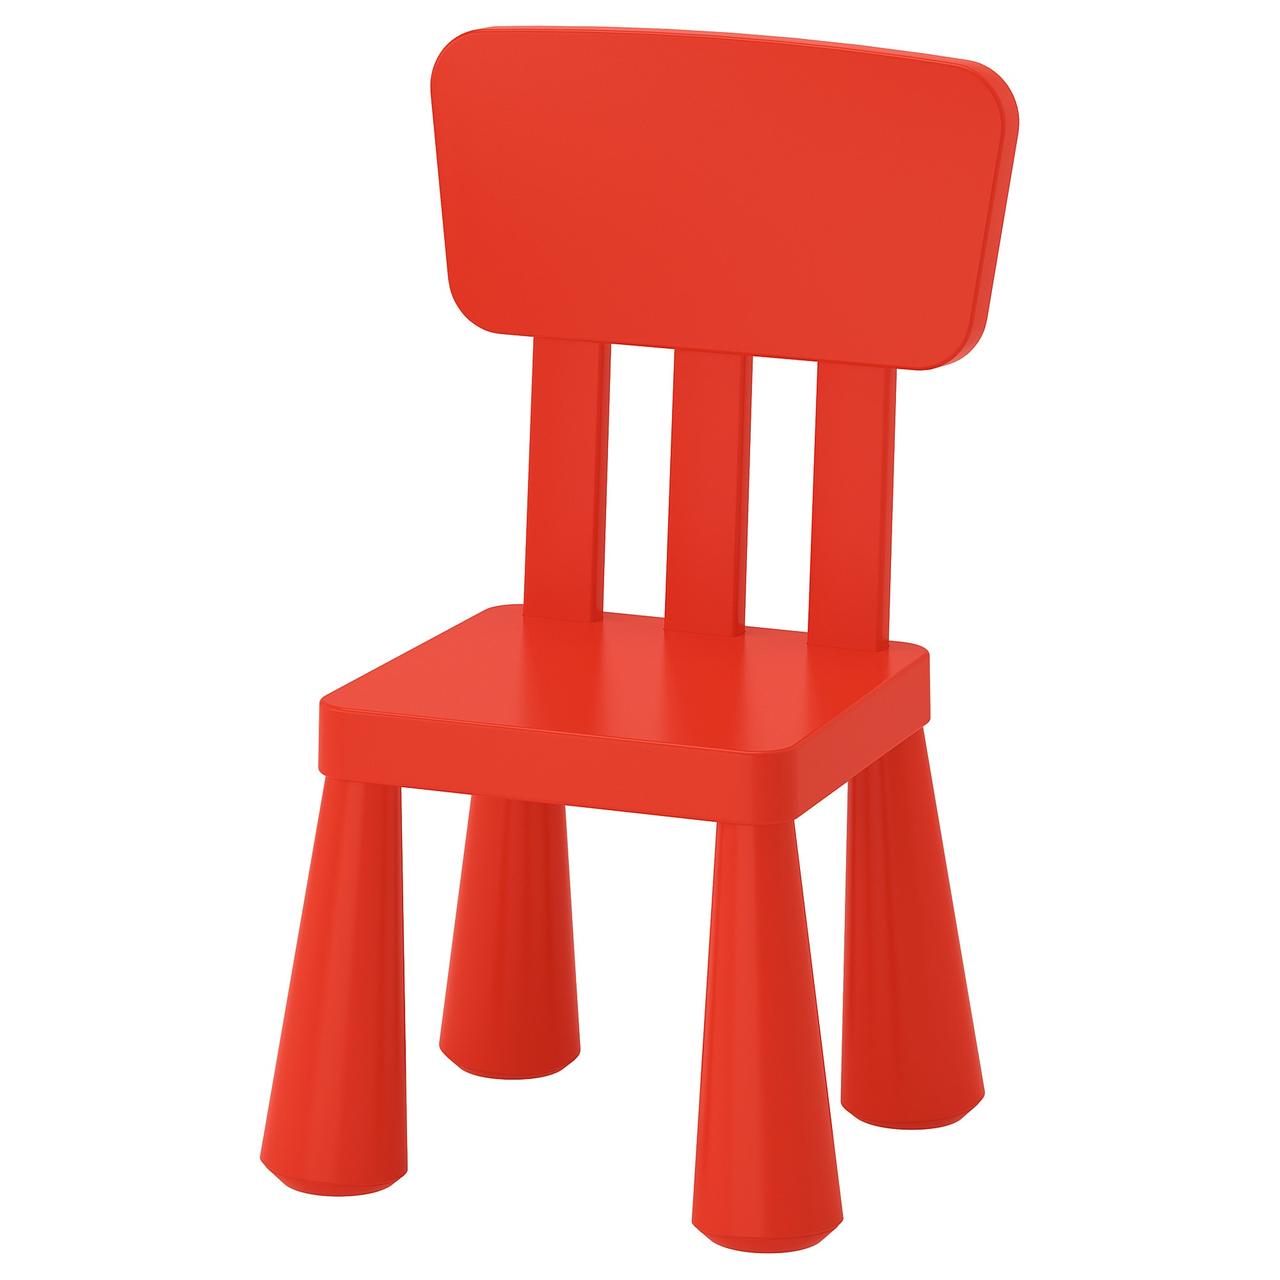 Дитячий стілець, д/будинку/вулиці, червоний,MAMMUT